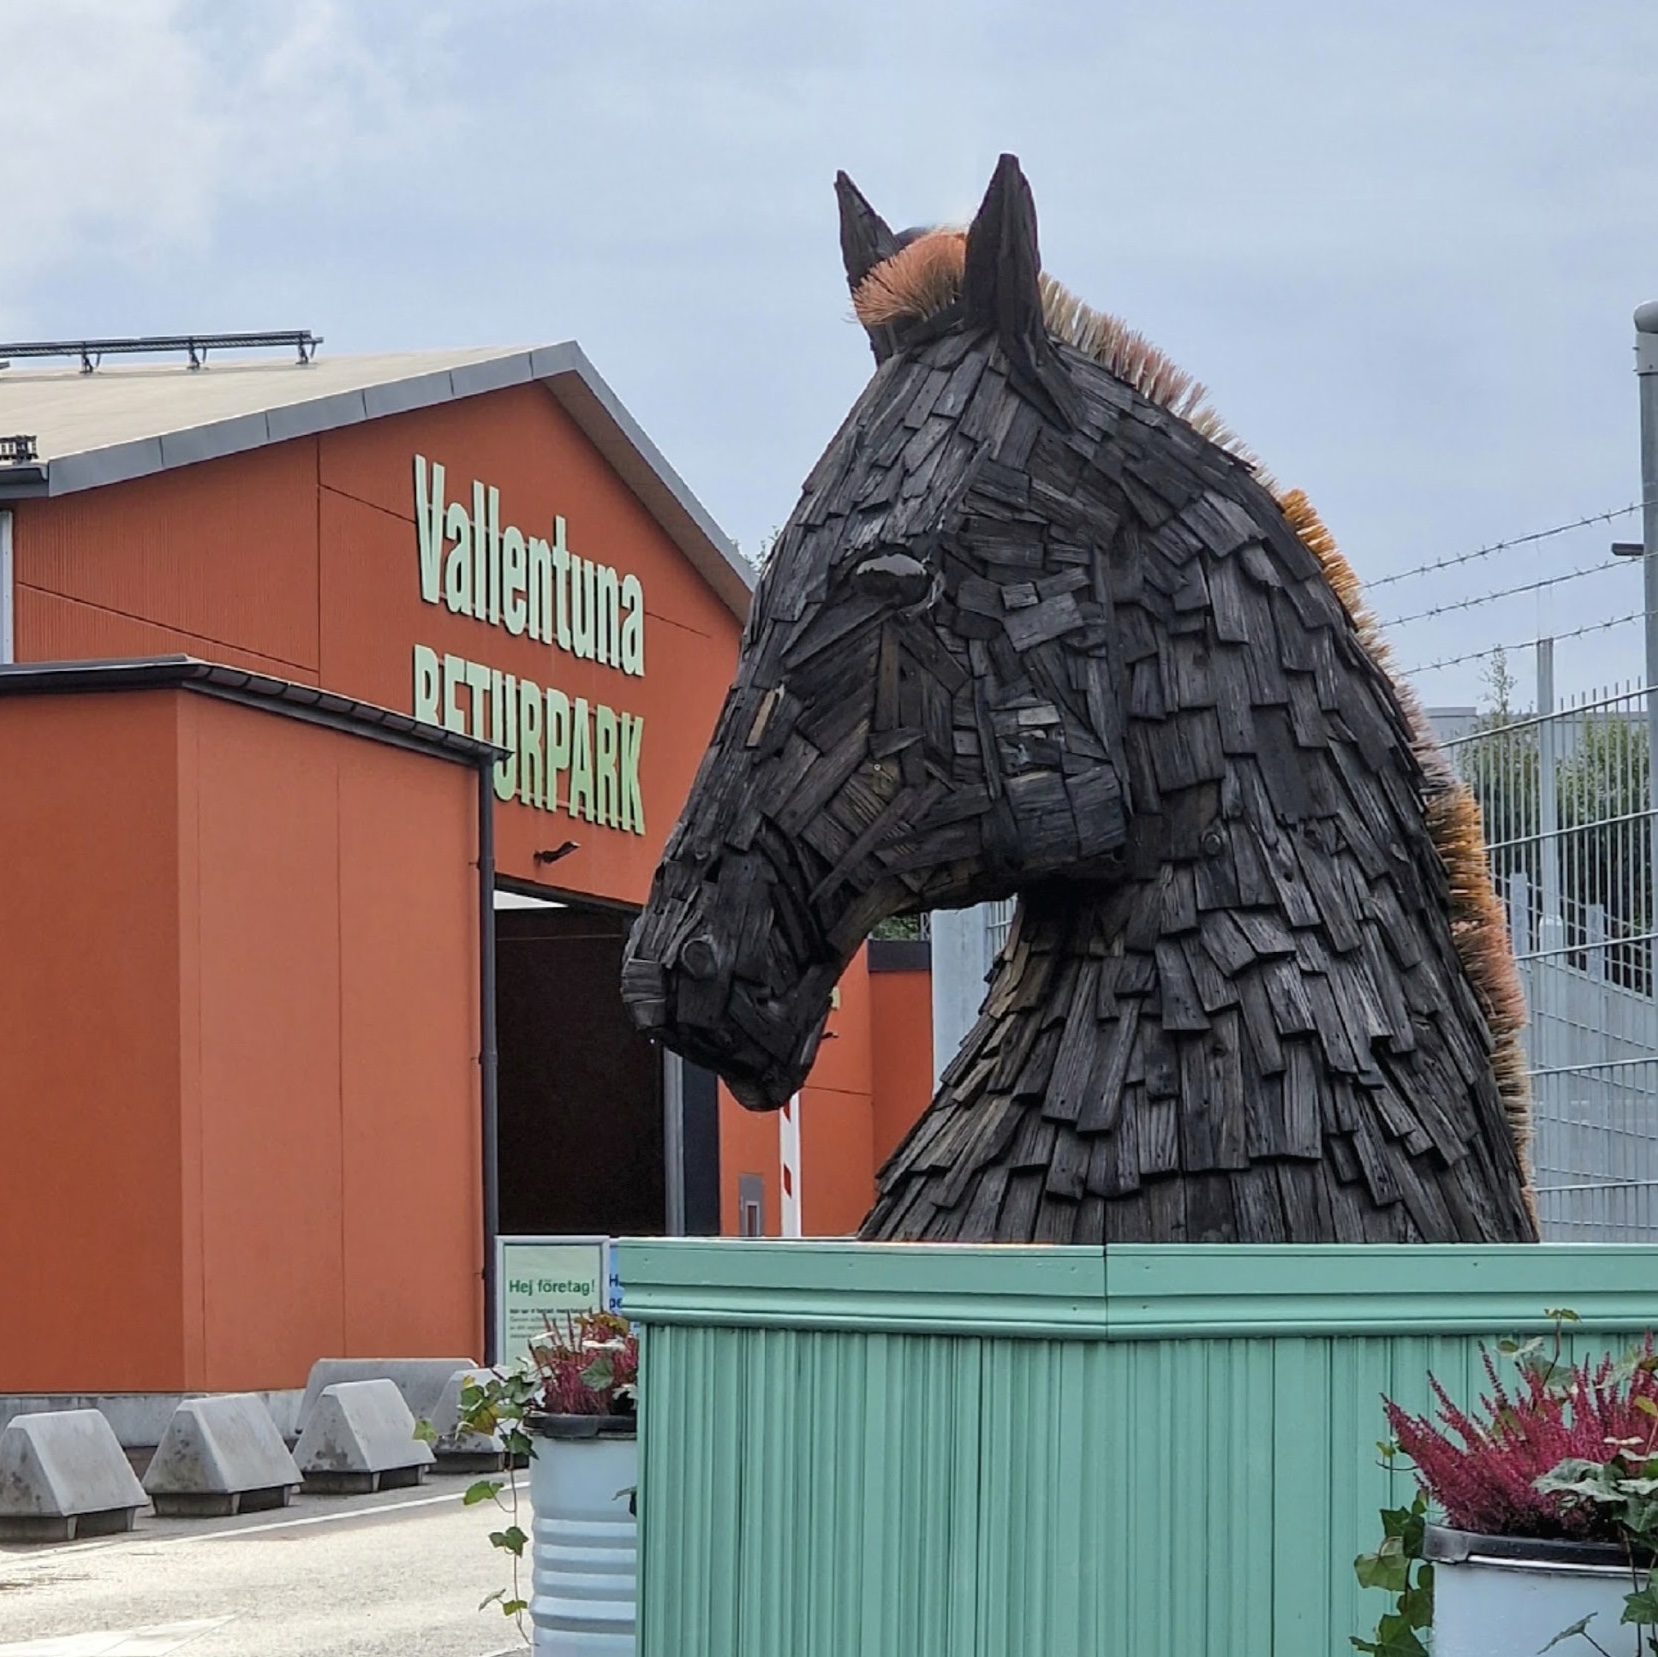 Fotografi av stor skulptur som står utomhus. Skulpturen föreställer ett hästhuvud. Materialet är svarta träbitar och manen är gjord av återbrukade borstar.